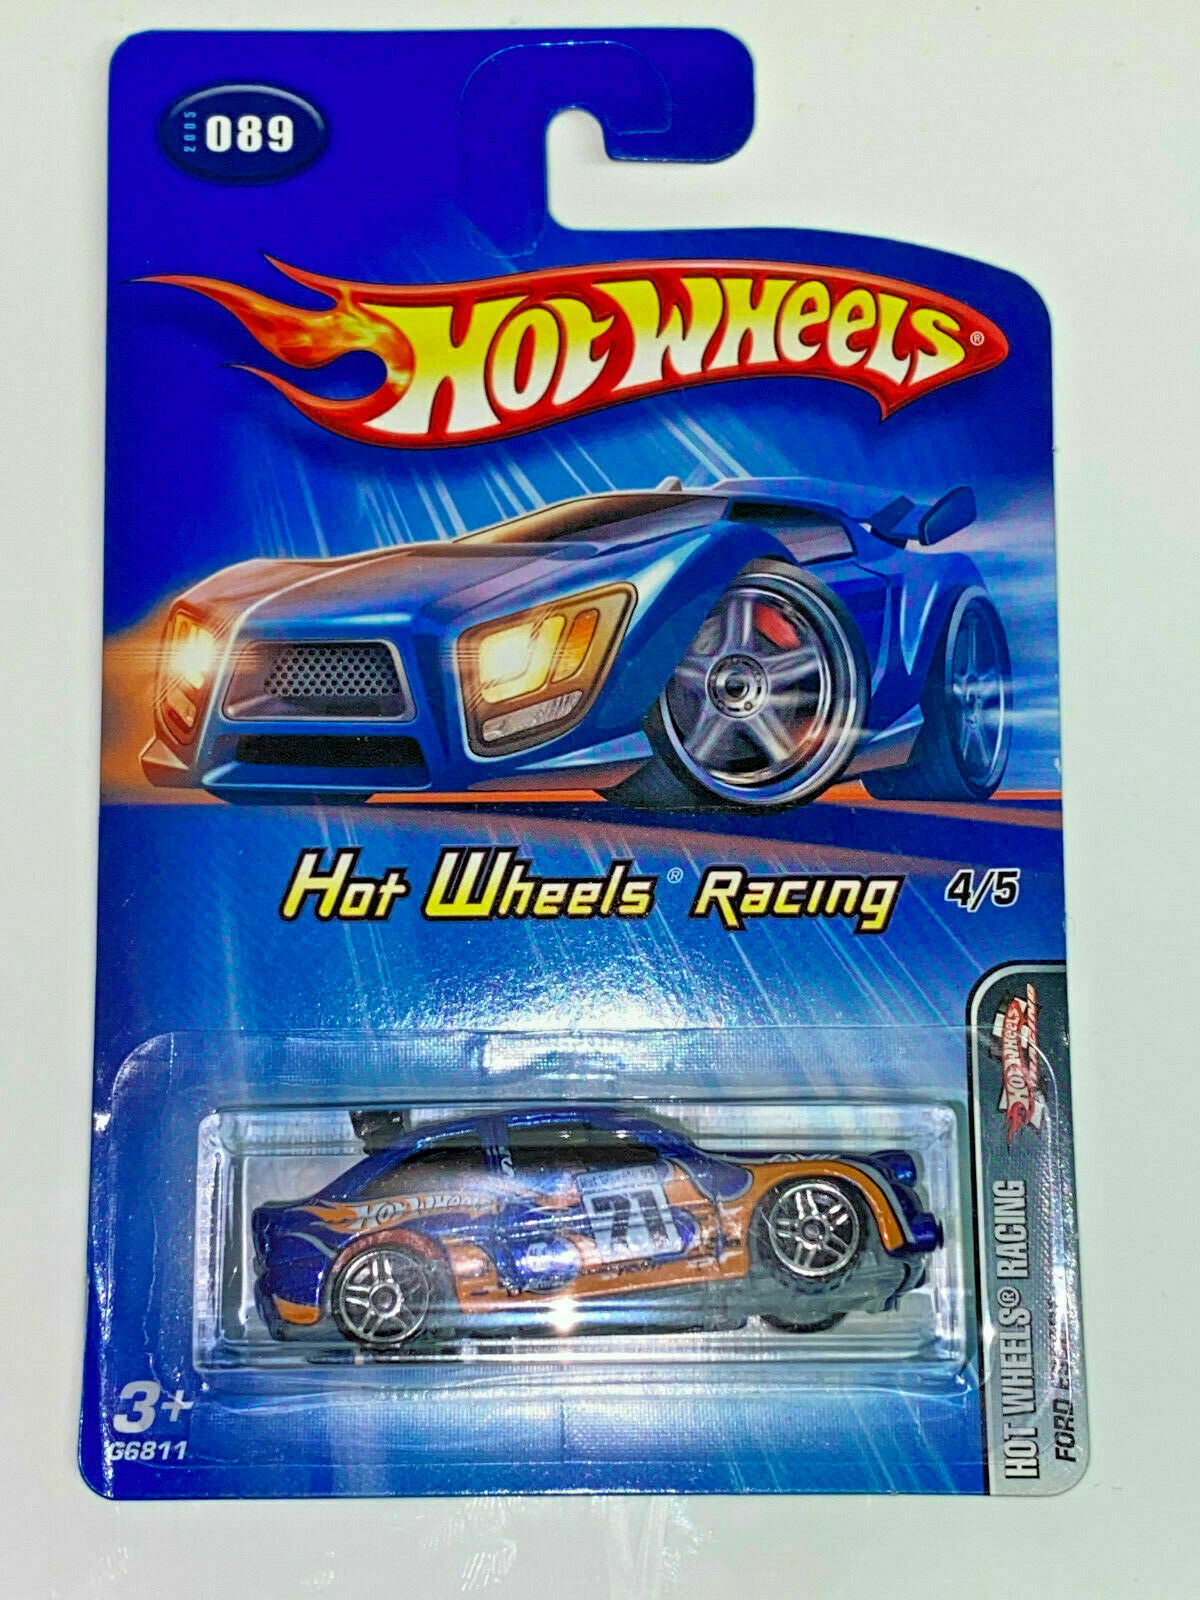 2005 Hot Wheels Hot Wheels Racing Full Set 5 Cars NIP #086,#087,#088,#089,#090